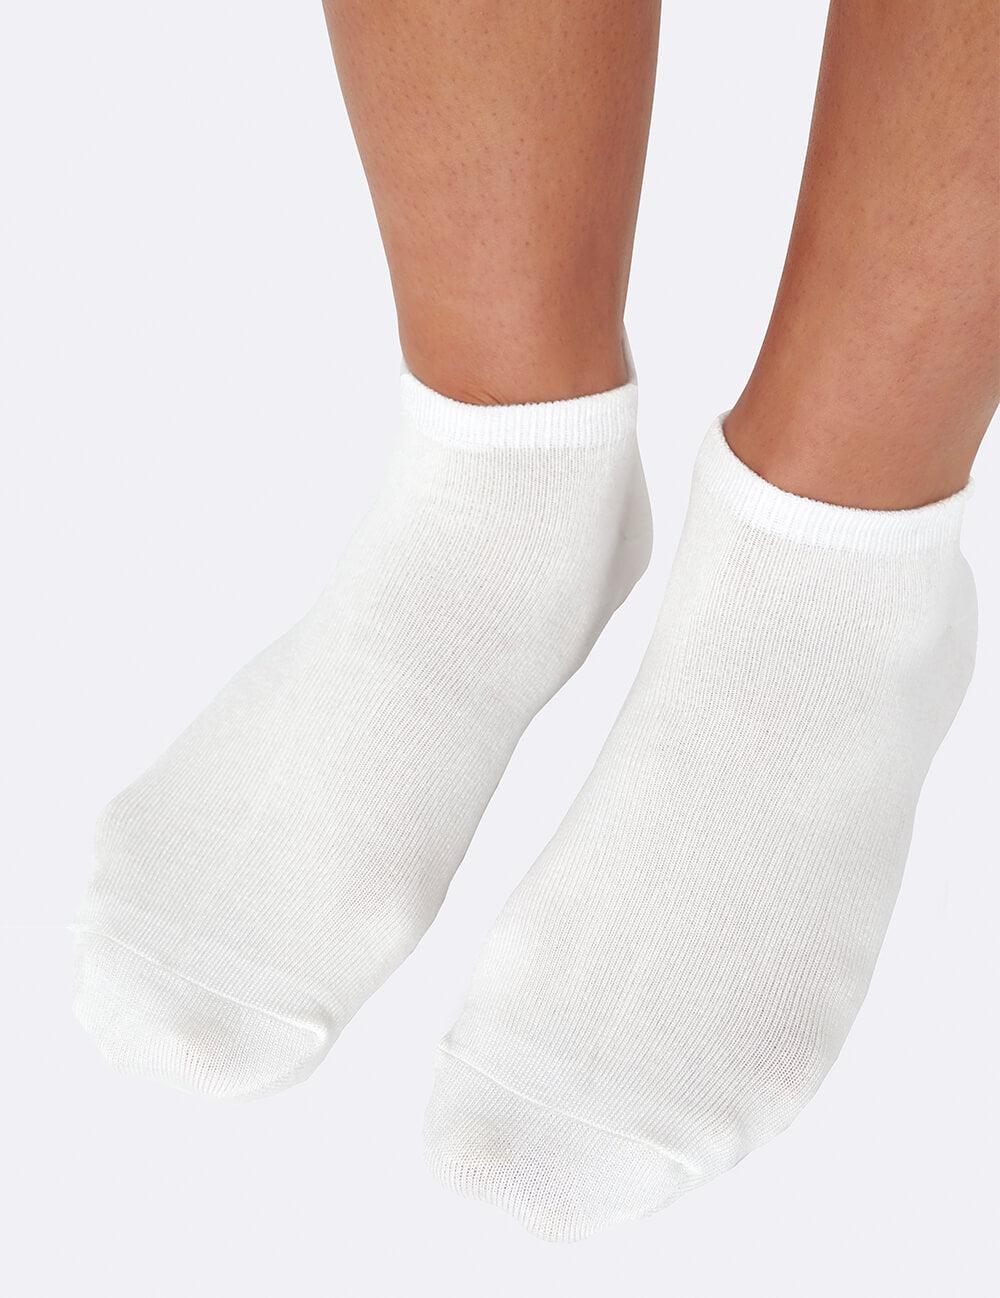 low ankle socks women